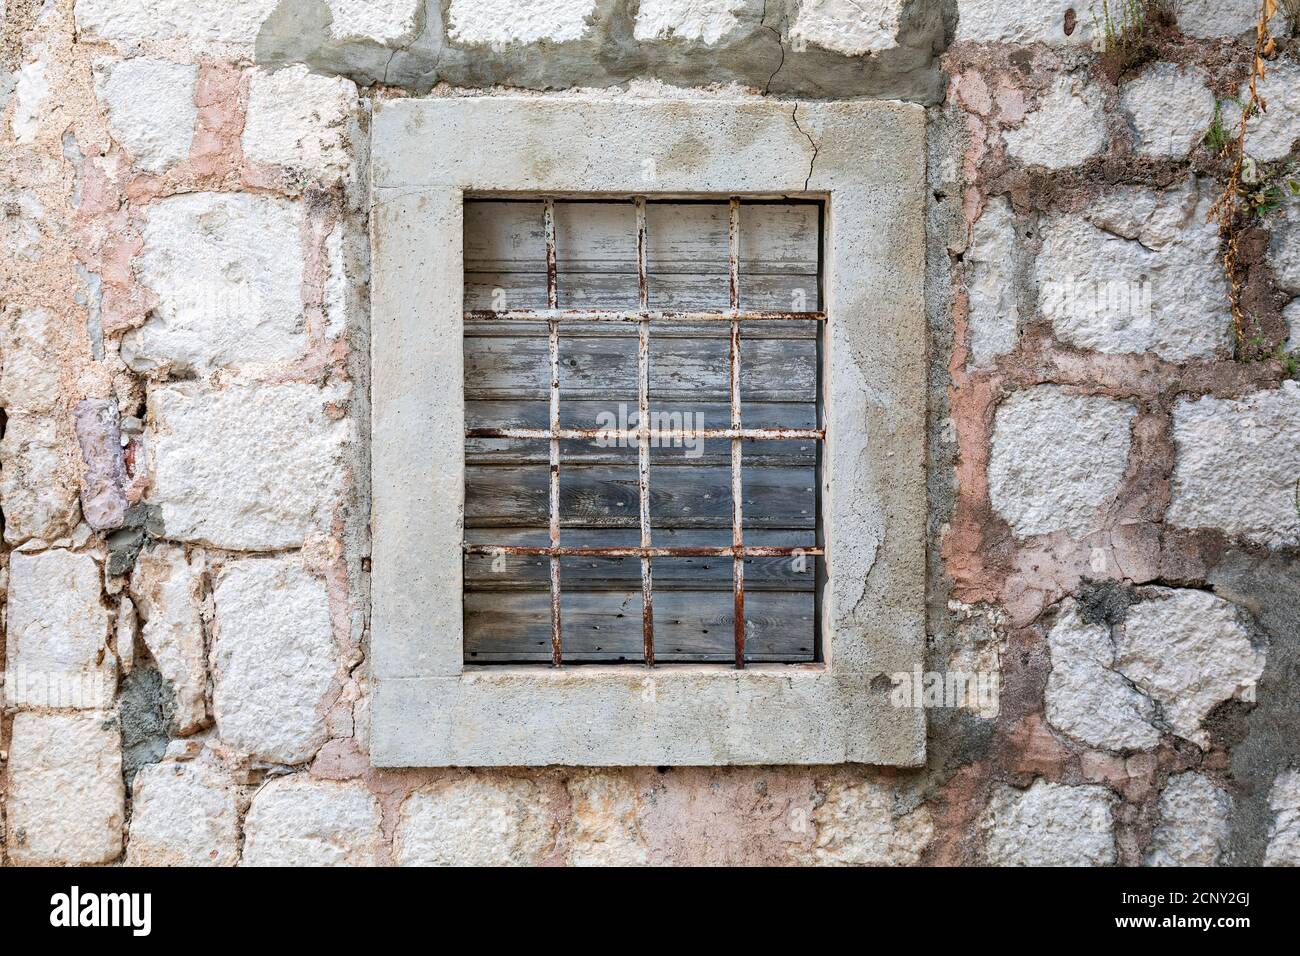 Verwitterte geschlossene Fenster mit rostigen Bars auf einem alten verlassenen Stein am Meer Haus. Stockfoto